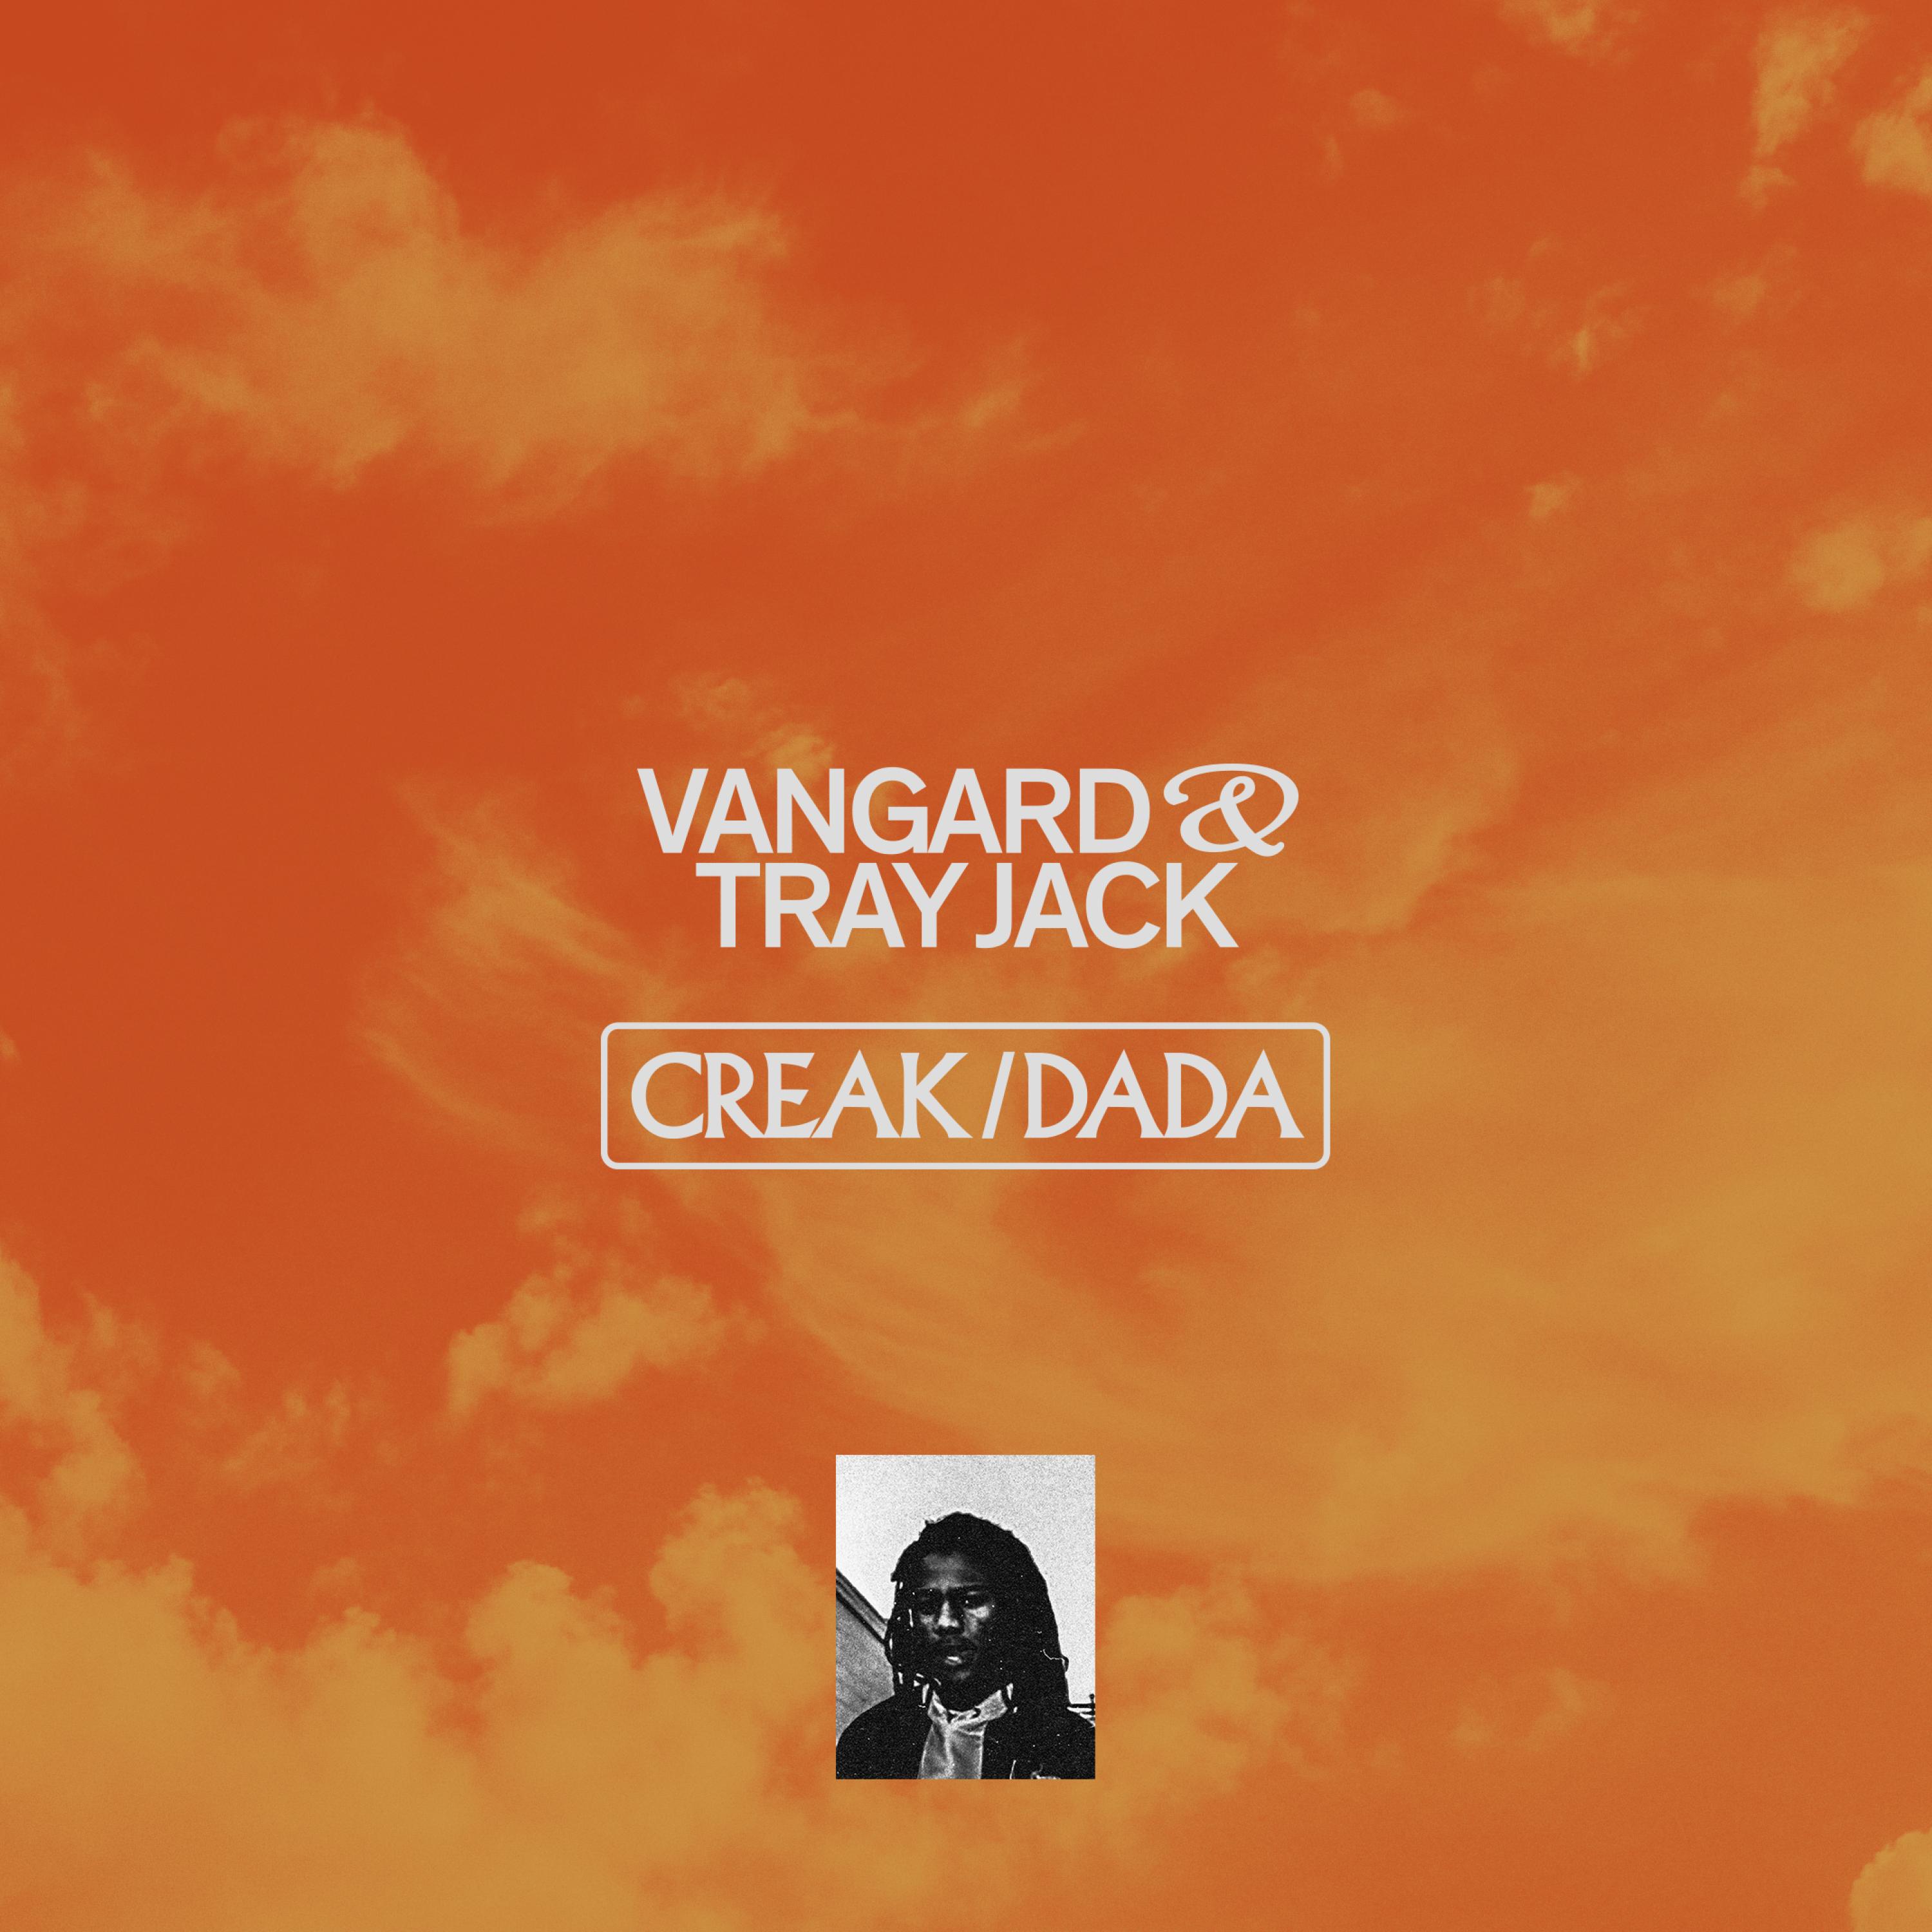 Vangard - Dada (feat. Tray Jack)